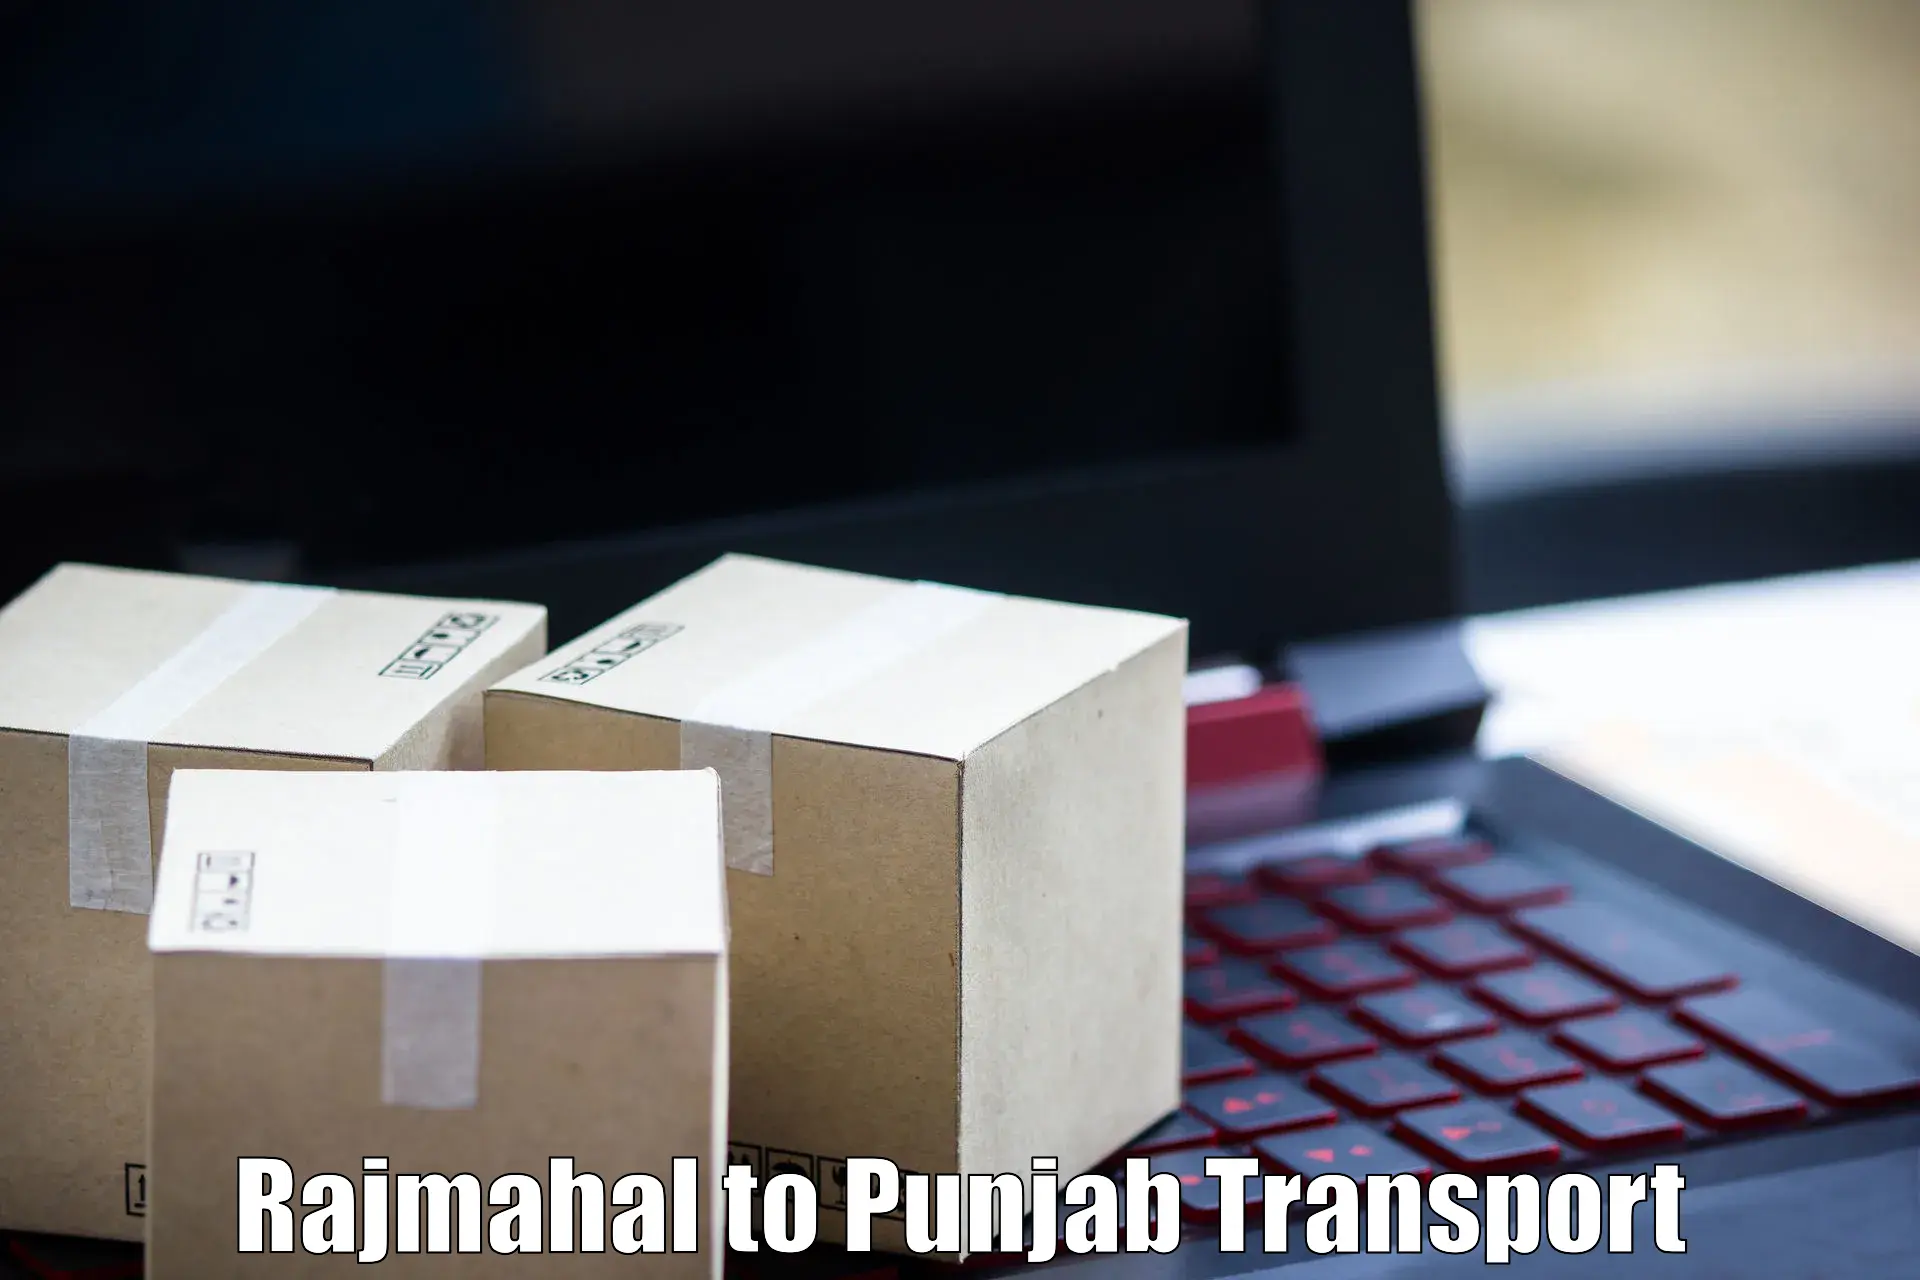 Container transport service Rajmahal to Ajnala